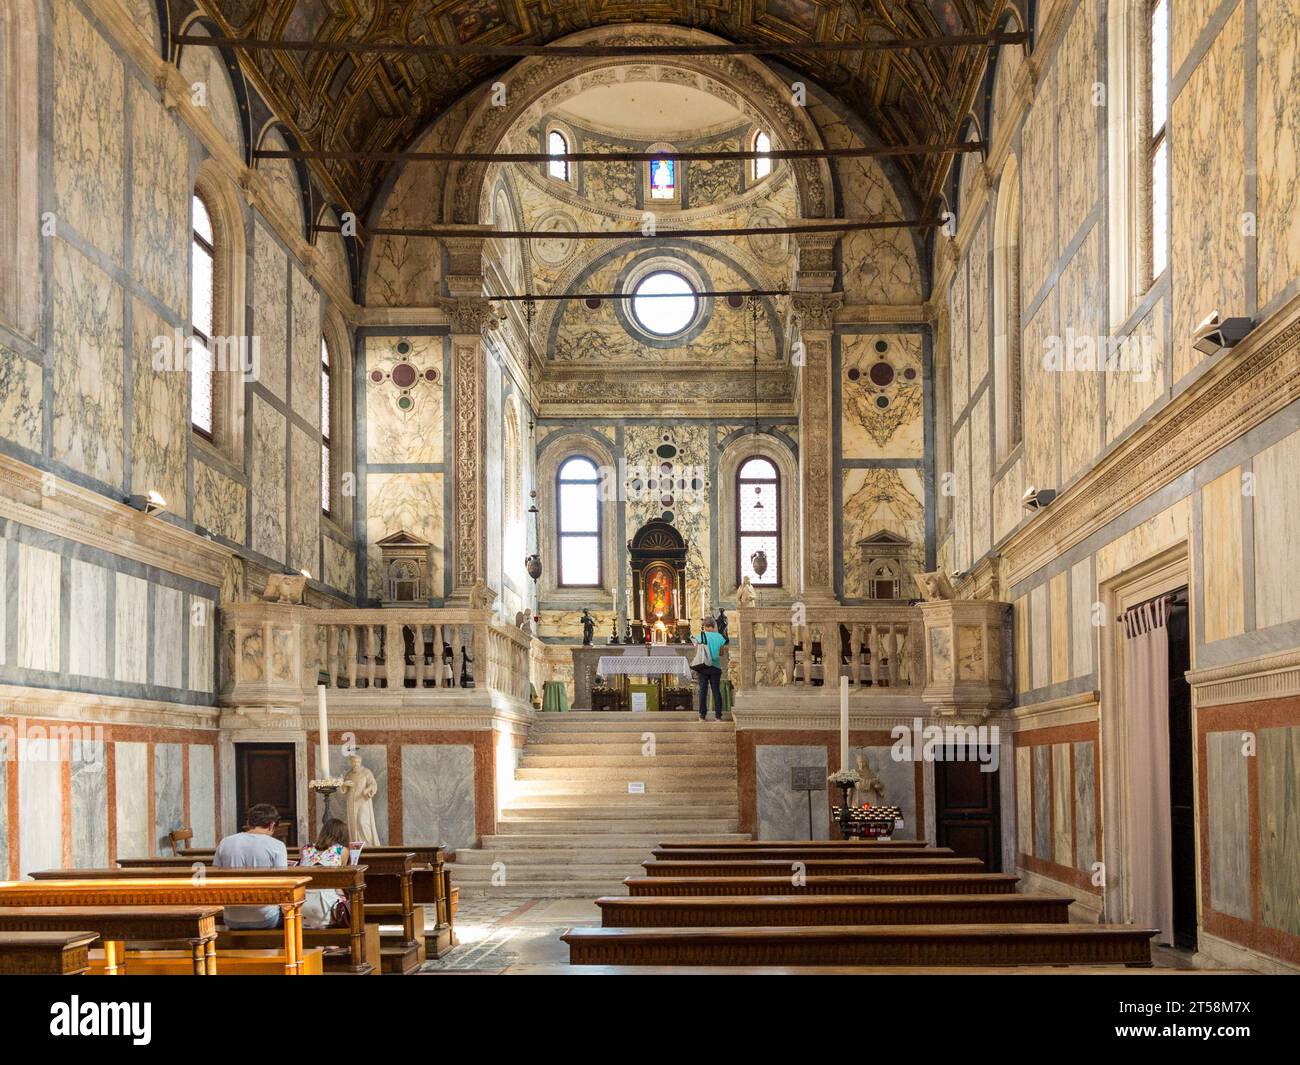 Das Innere einer venezianischen Kirche ist reich mit Marmor dekoriert. Zwei Touristen sitzen in der Kirche, während ein Tourist den Altar betrachtet. Venedig. Stockfoto